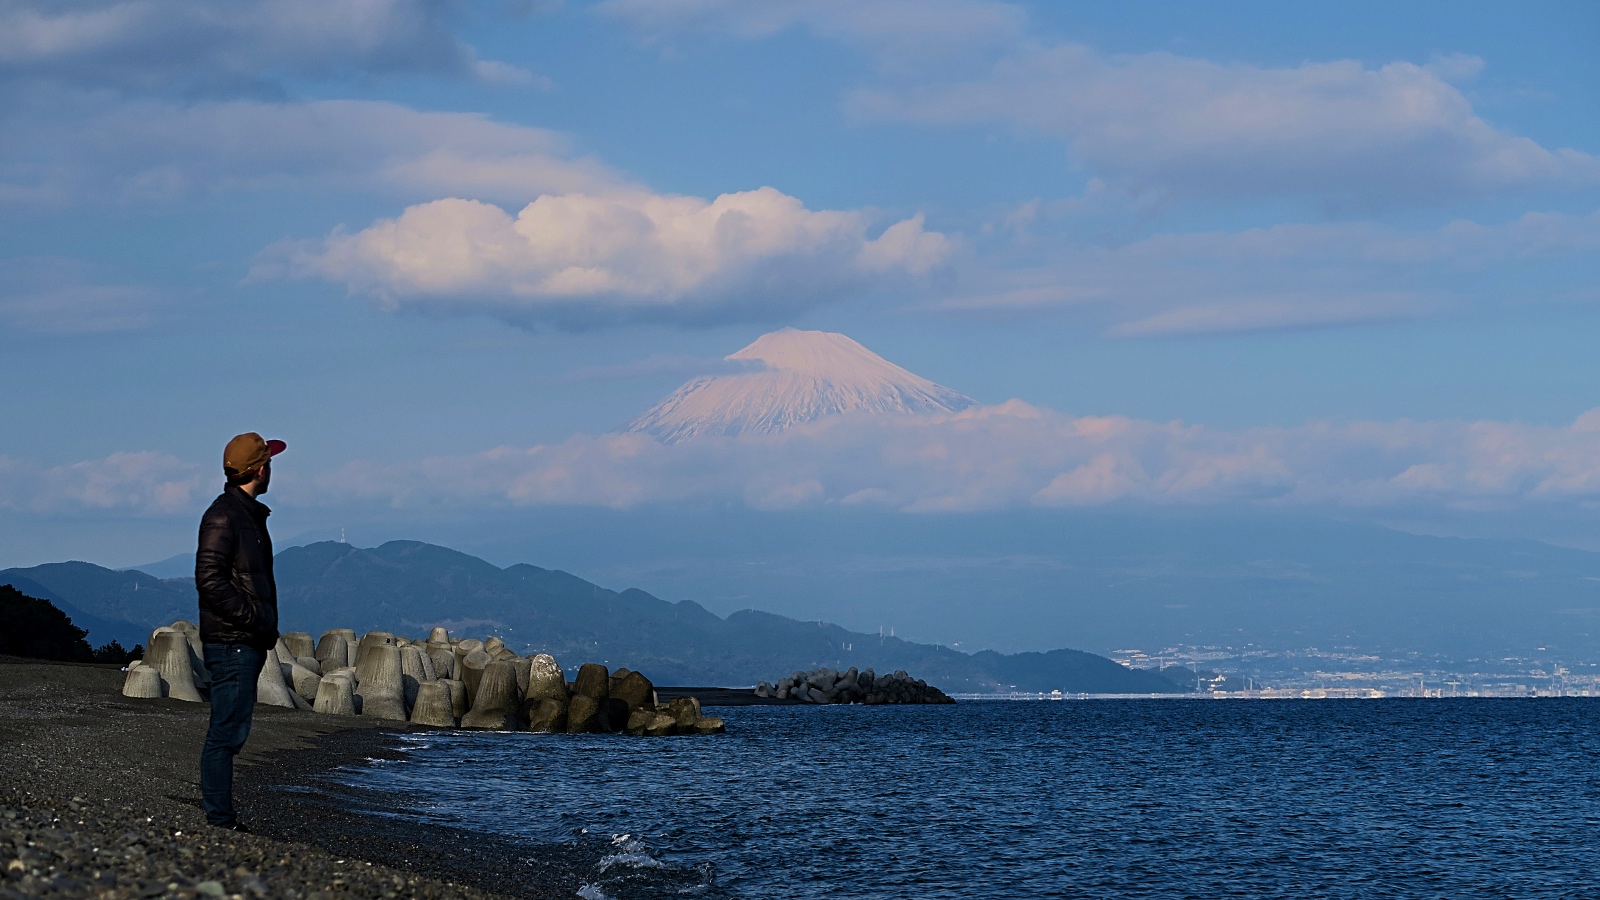 Der Blick auf den Fuji vom Meer.